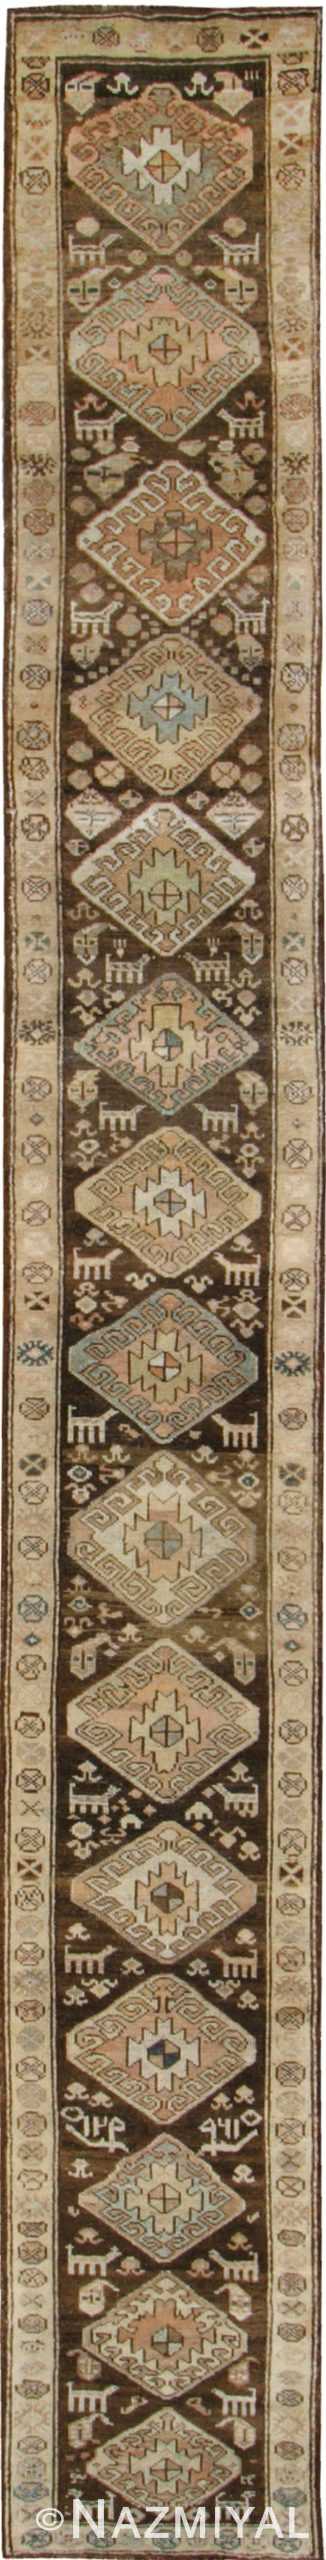 Antique Kurdish Persian Rugs 42726 Detail/Large View